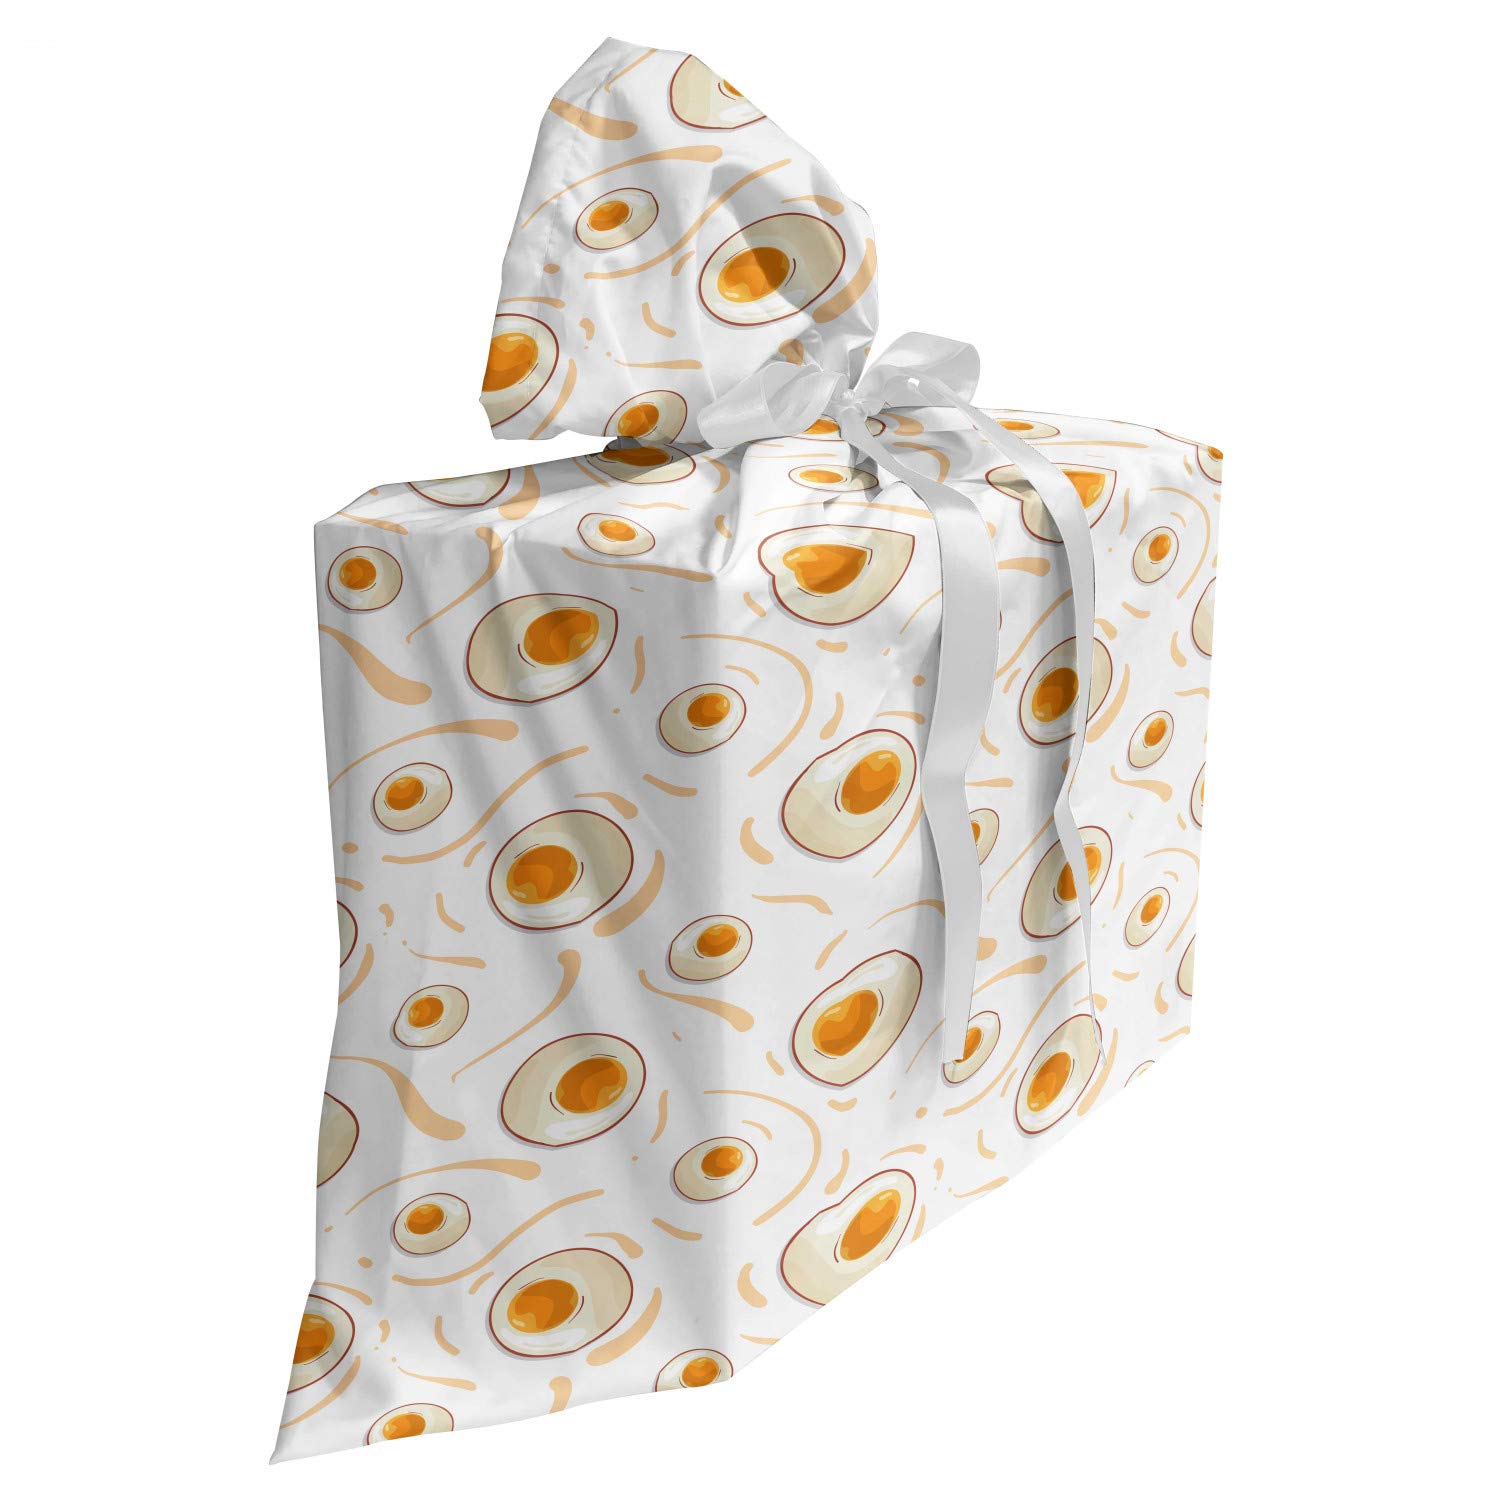 ABAKUHAUS Ei Baby Shower Geschänksverpackung aus Stoff, Gesunde Beakfast Muster, 3x Bändern Wiederbenutzbar, 70 x 80 cm, Marigold Pfirsich-Creme